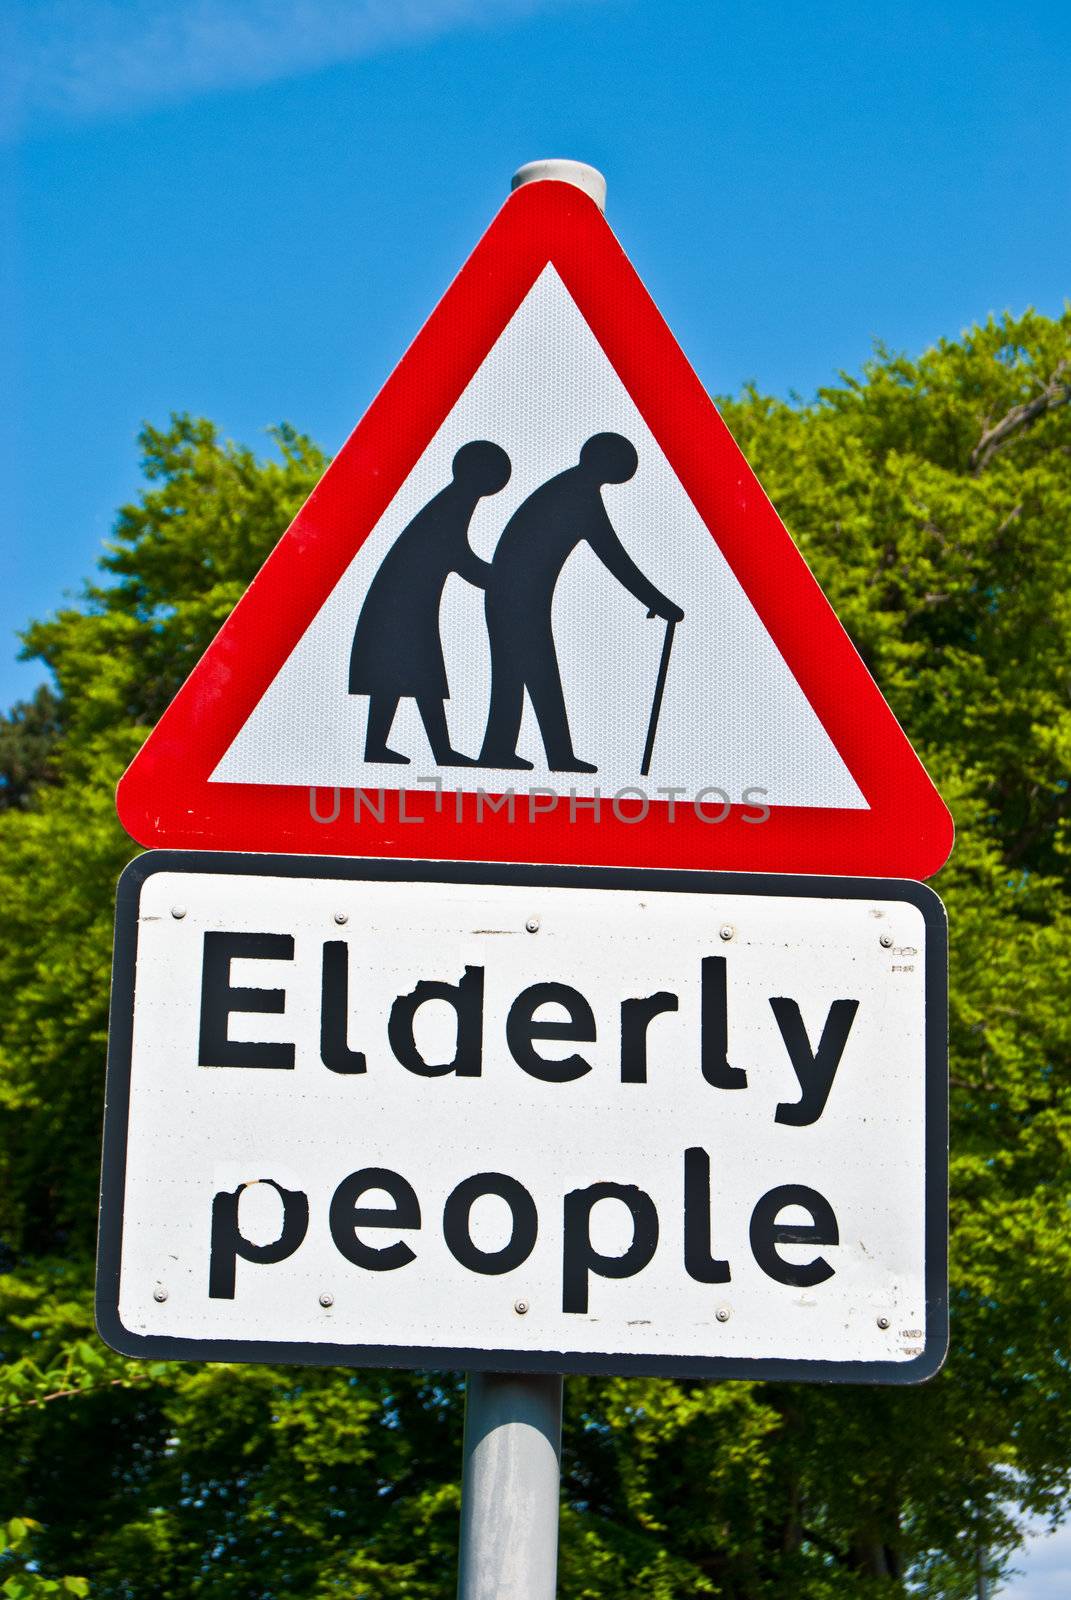 Elderly people by Jule_Berlin